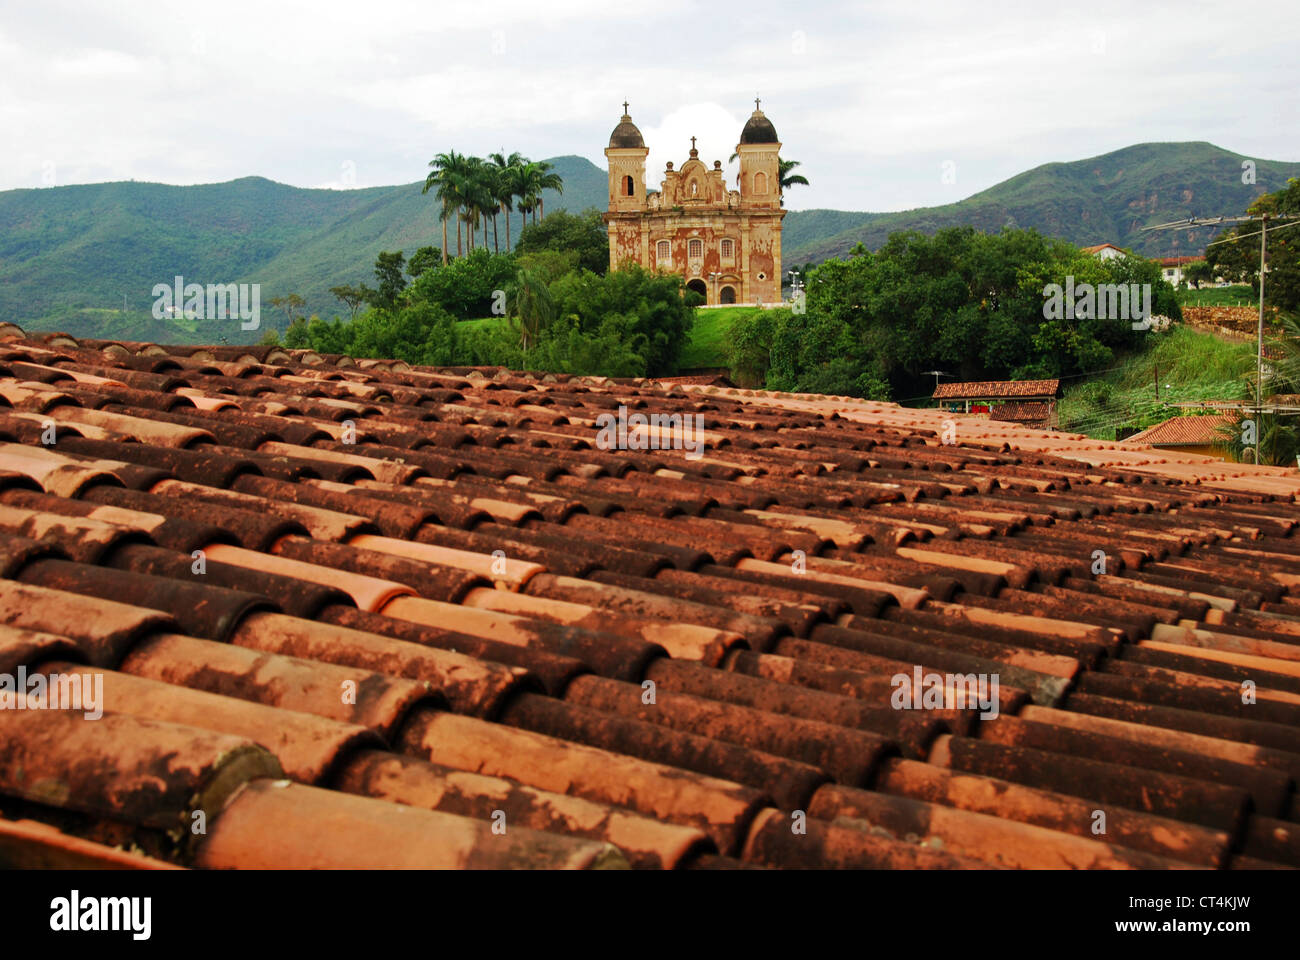 Brazil, Minas Gerais, Mariana, Igreja Sao Pedro dos Clerigos, view on old colonial church through tiled roof Stock Photo